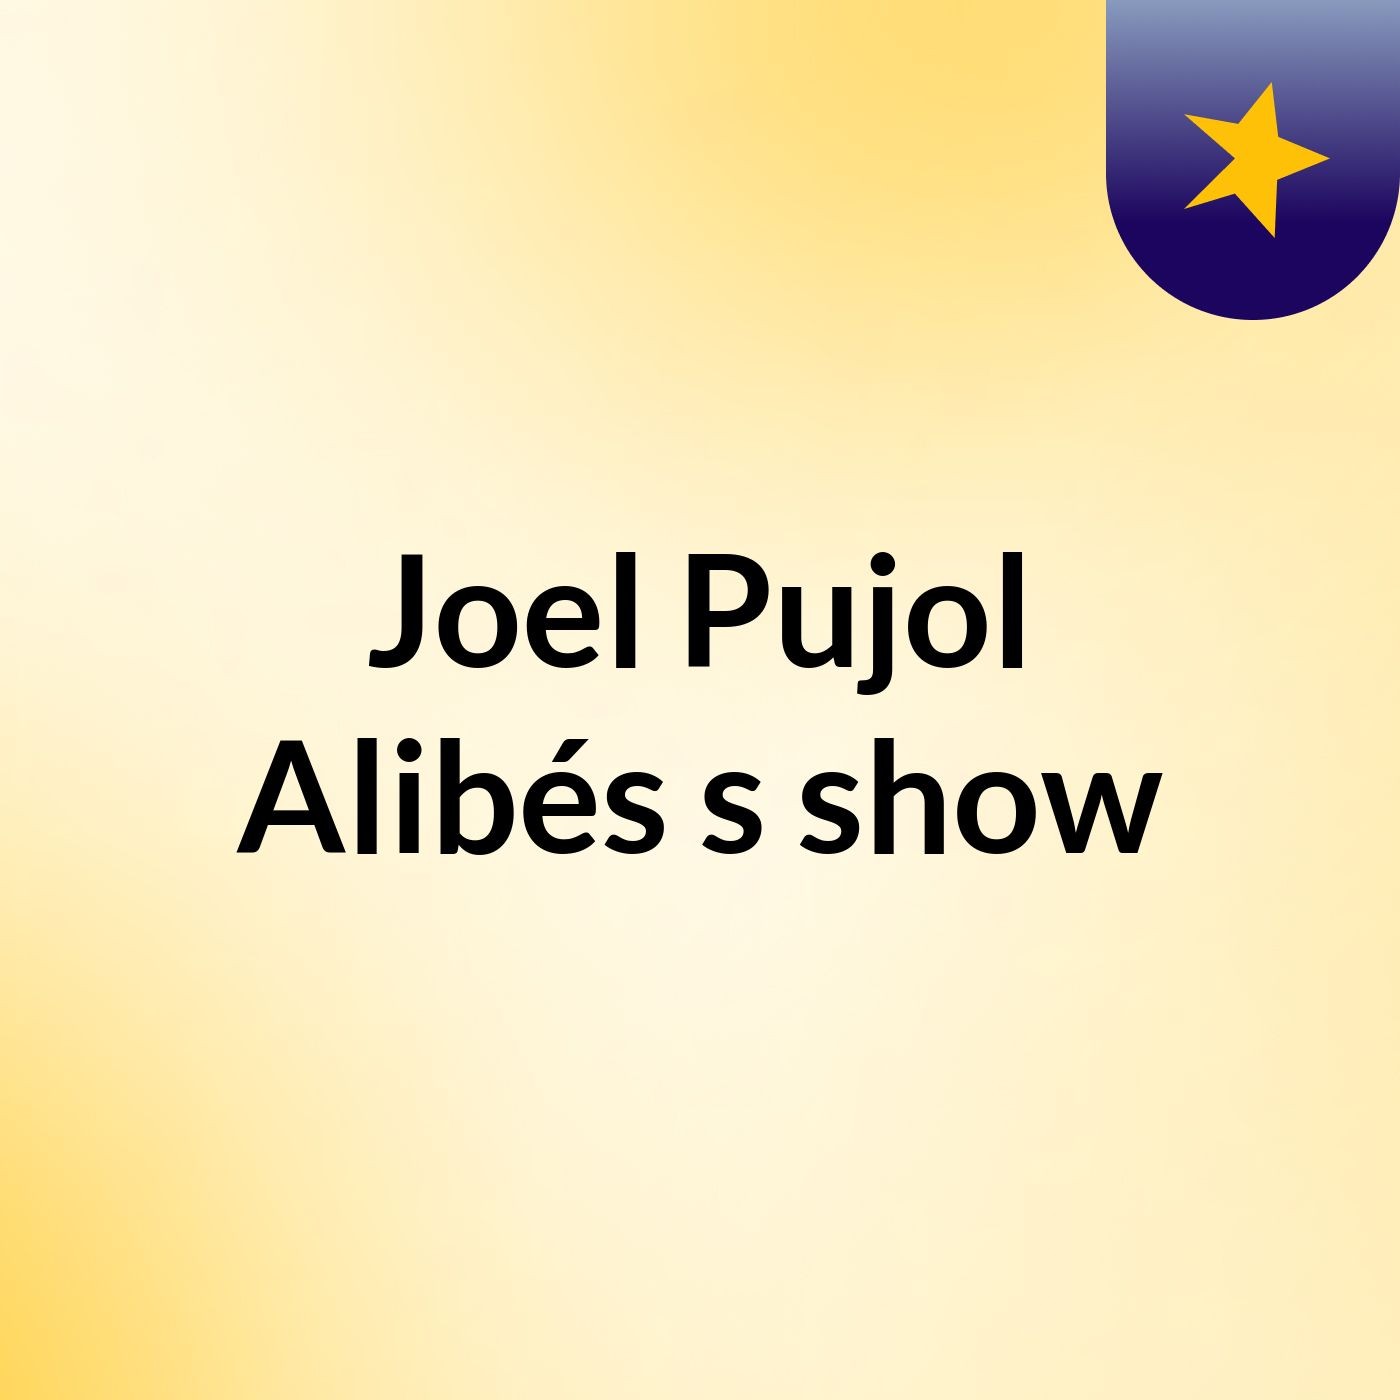 Joel Pujol Alibés's show